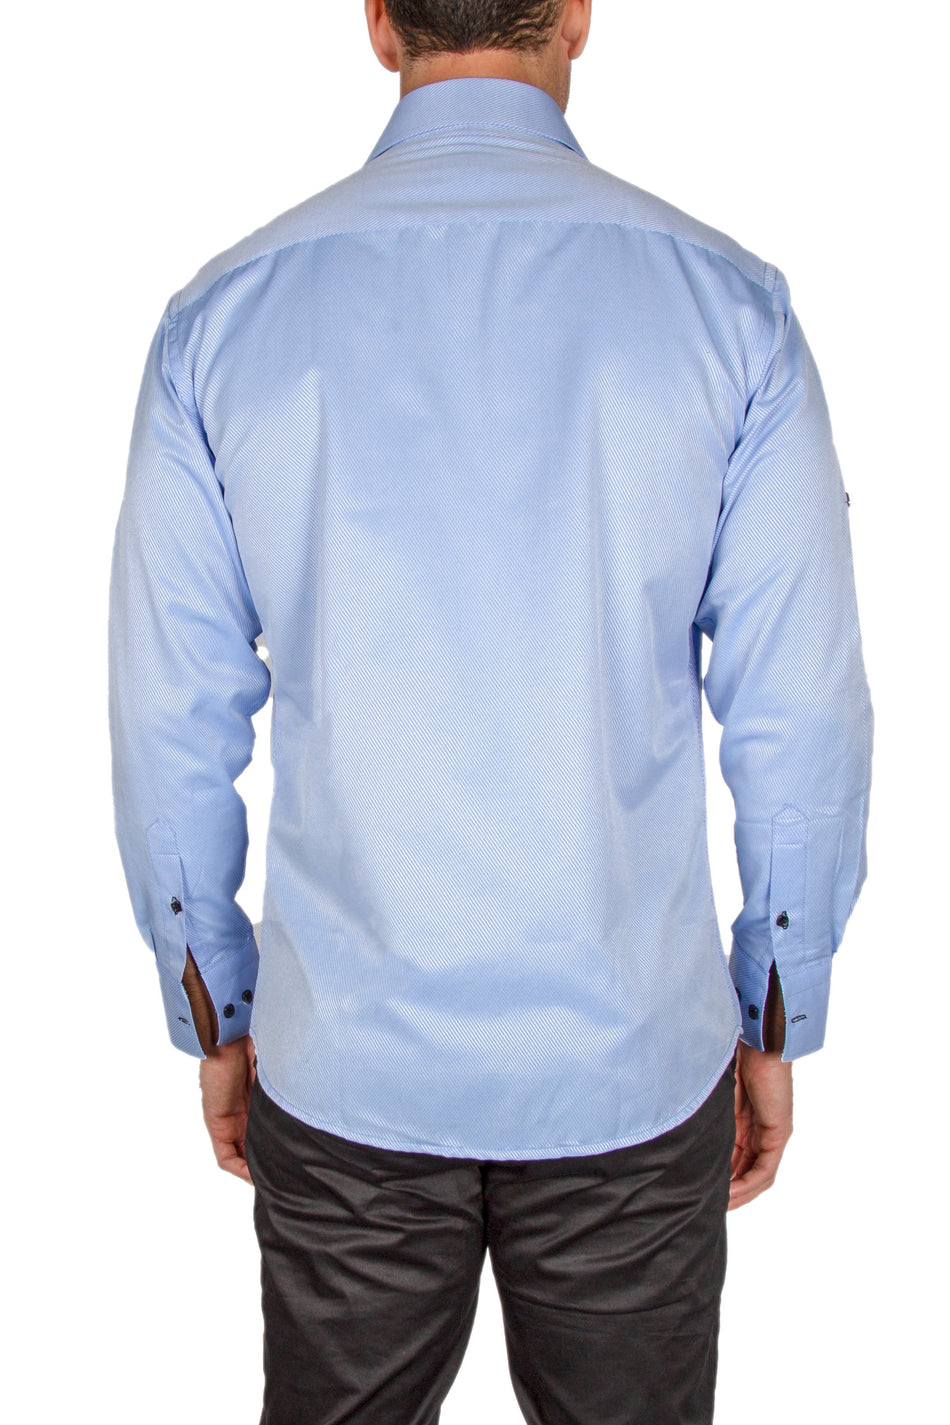 172475-mens-blue-button-up-long-sleeve-dress-shirt